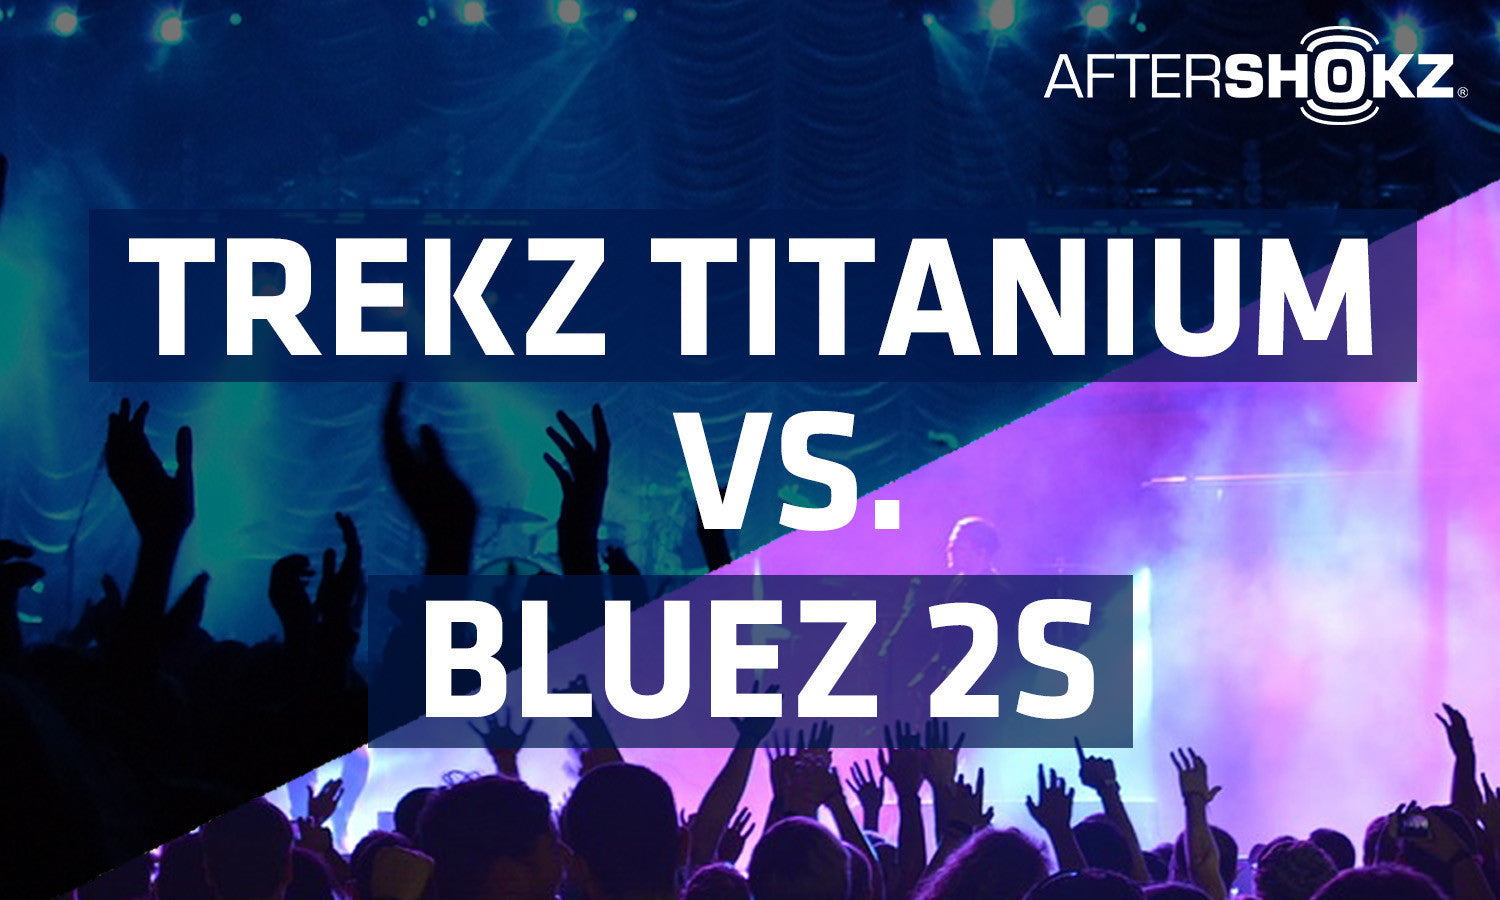 Titanium vs. Bluez 2S